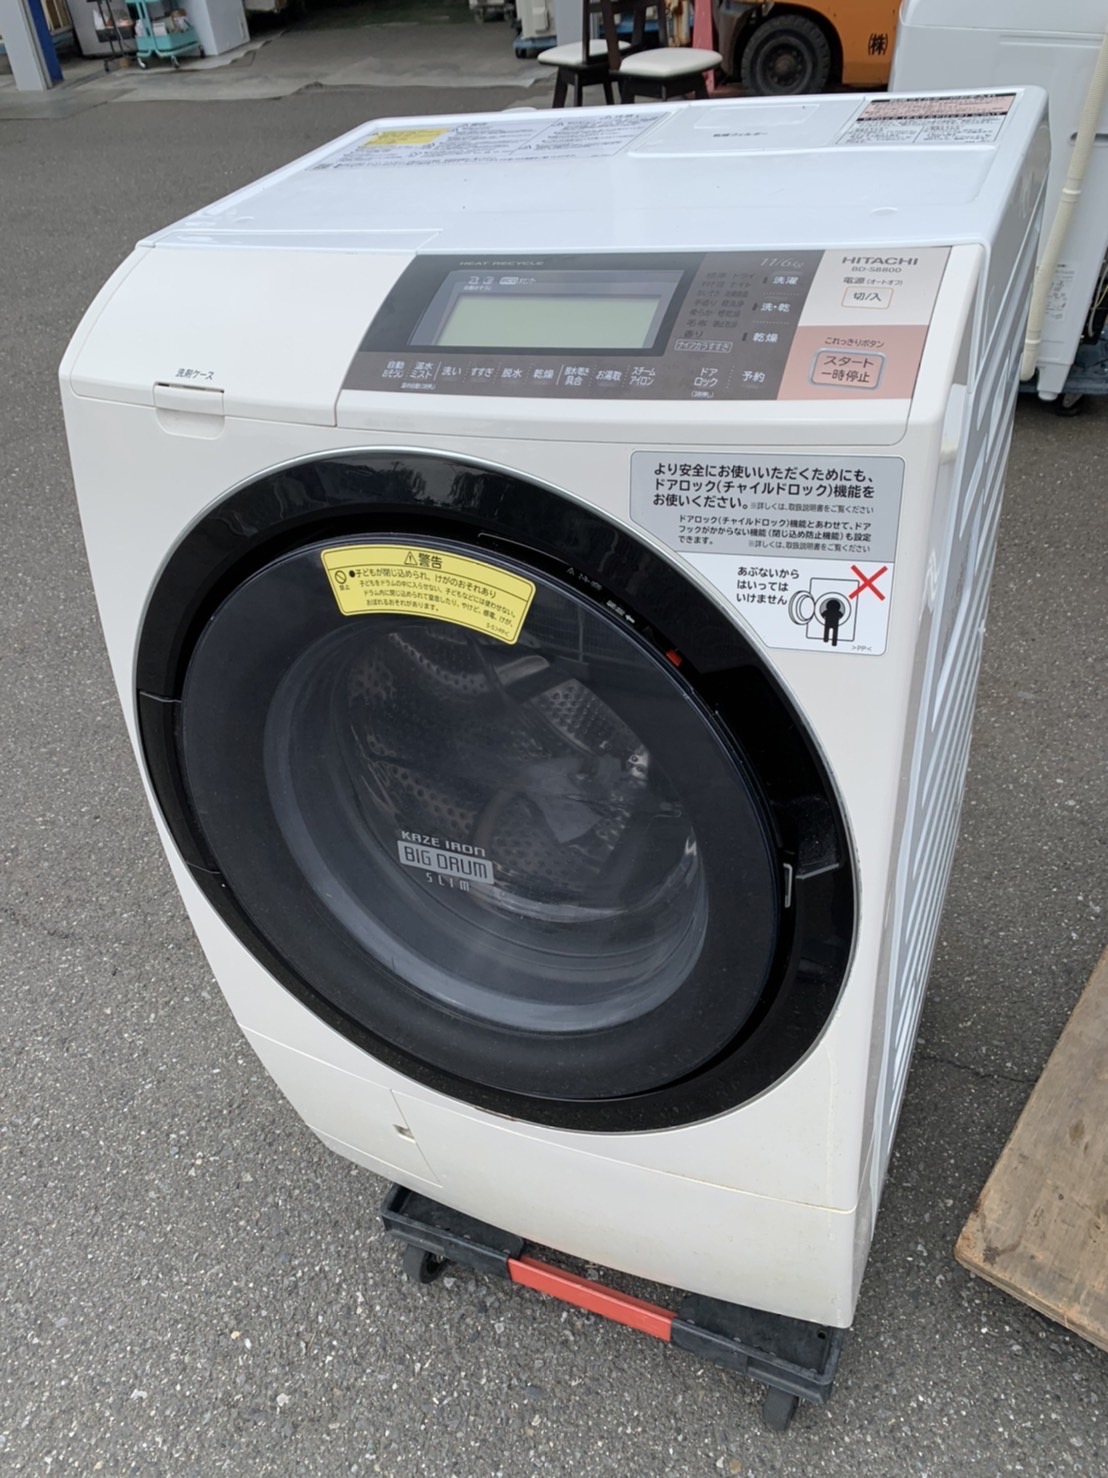 埼玉県さいたま市でドラム式洗濯機(HITACHI BD-S8800L ビッグドラム